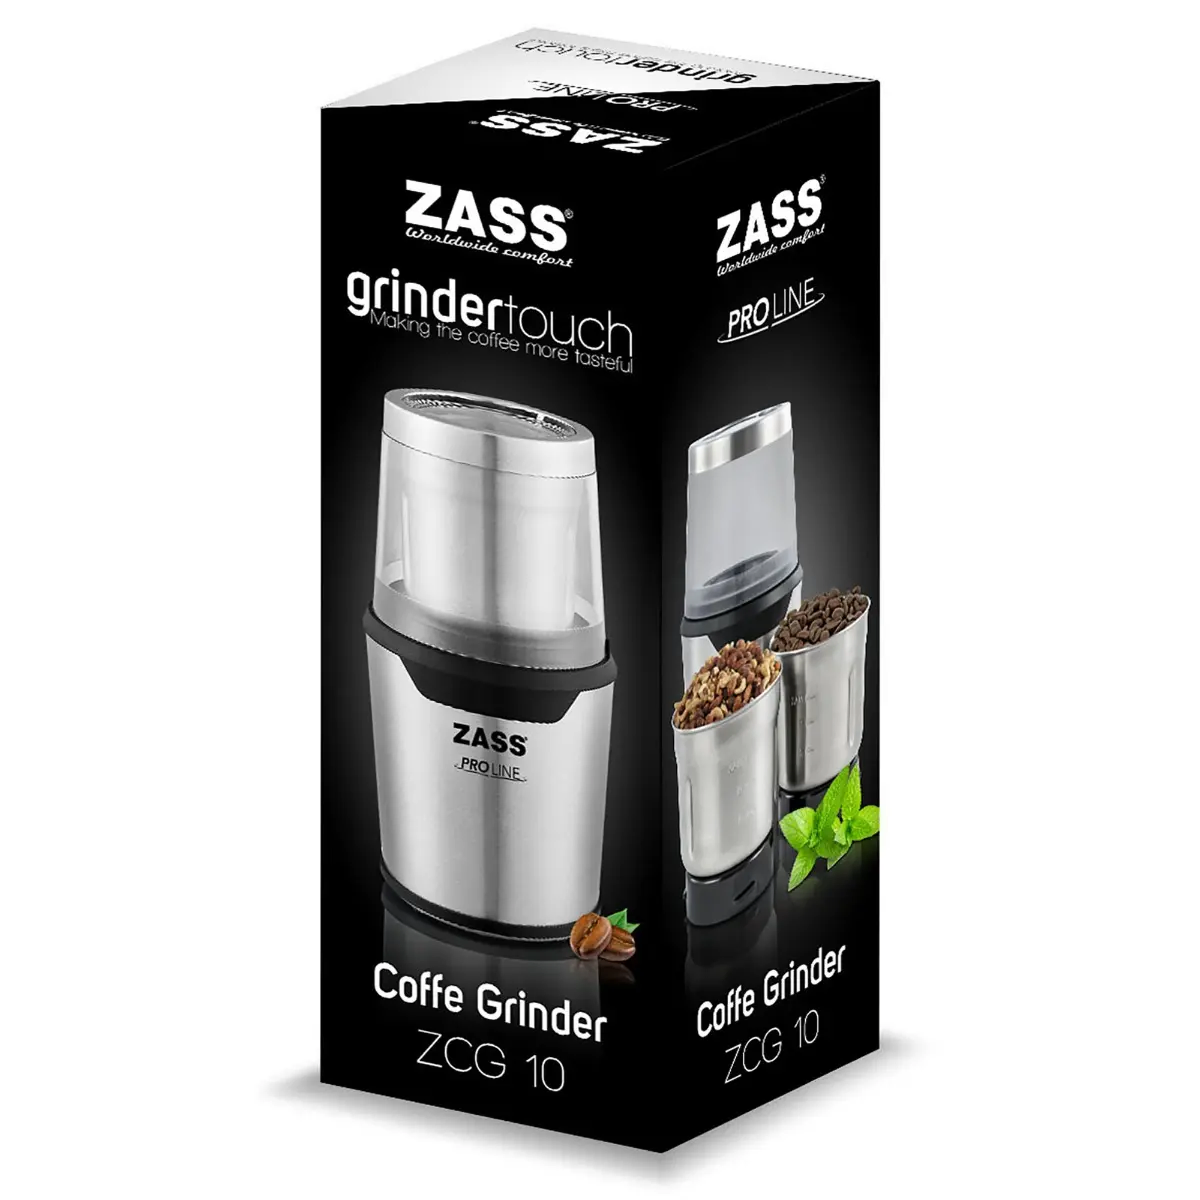 Rasnita cafea Zass ZCG 10, 85 g, 200 W, Argintiu